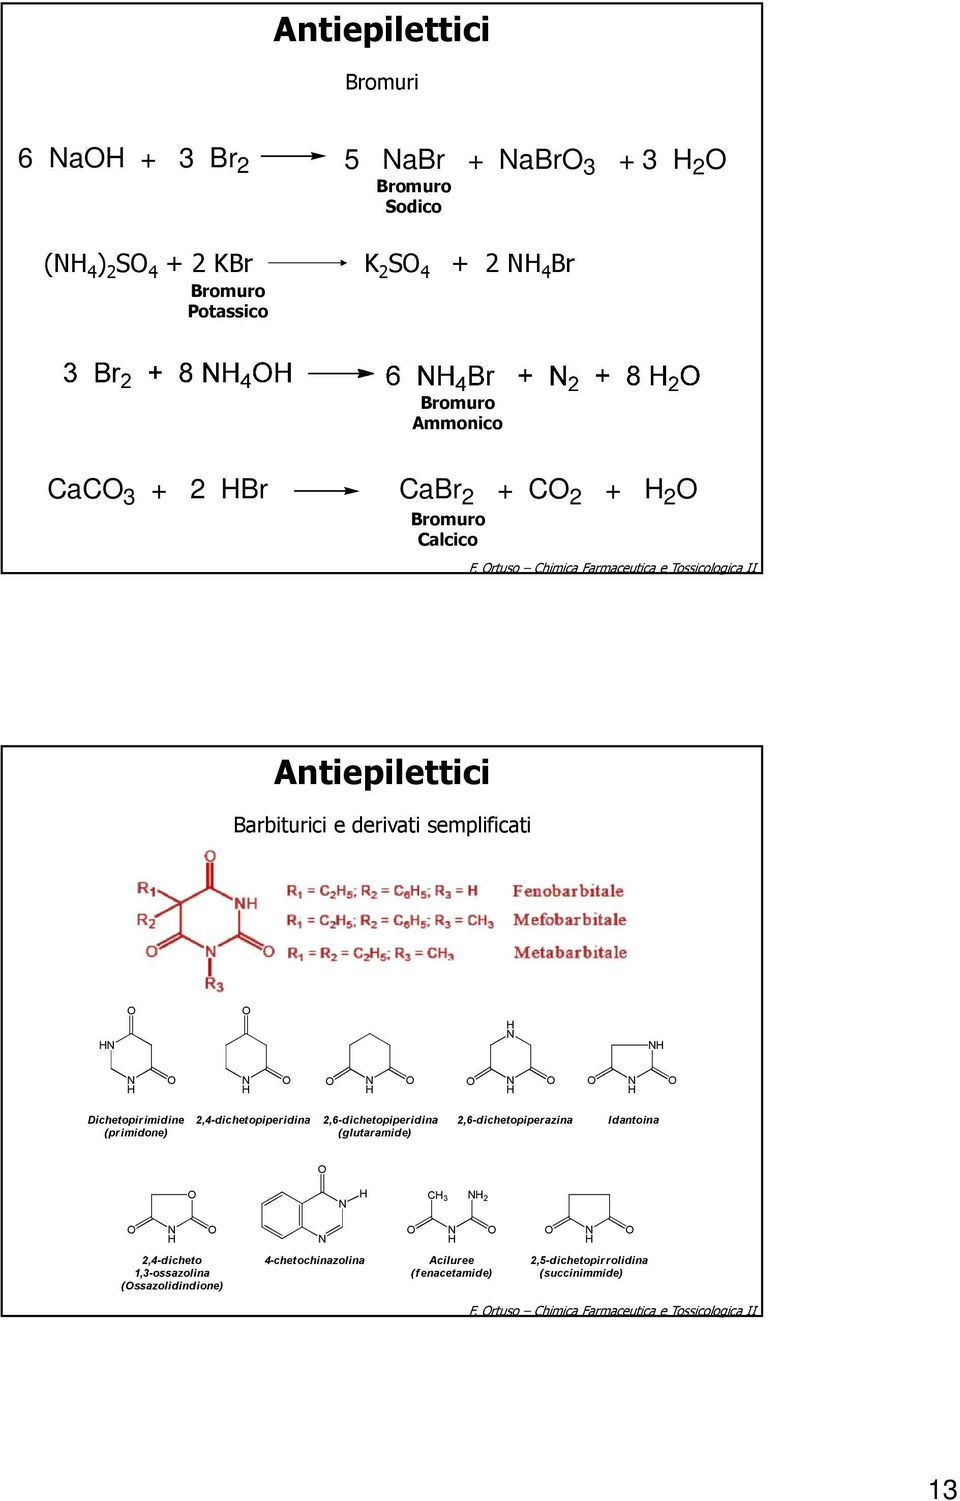 rtuso Chimica Farmaceutica e Tossicologica II Barbiturici e derivati semplificati Dichetopirimidine (primidone) 2,4-dichetopiperidina